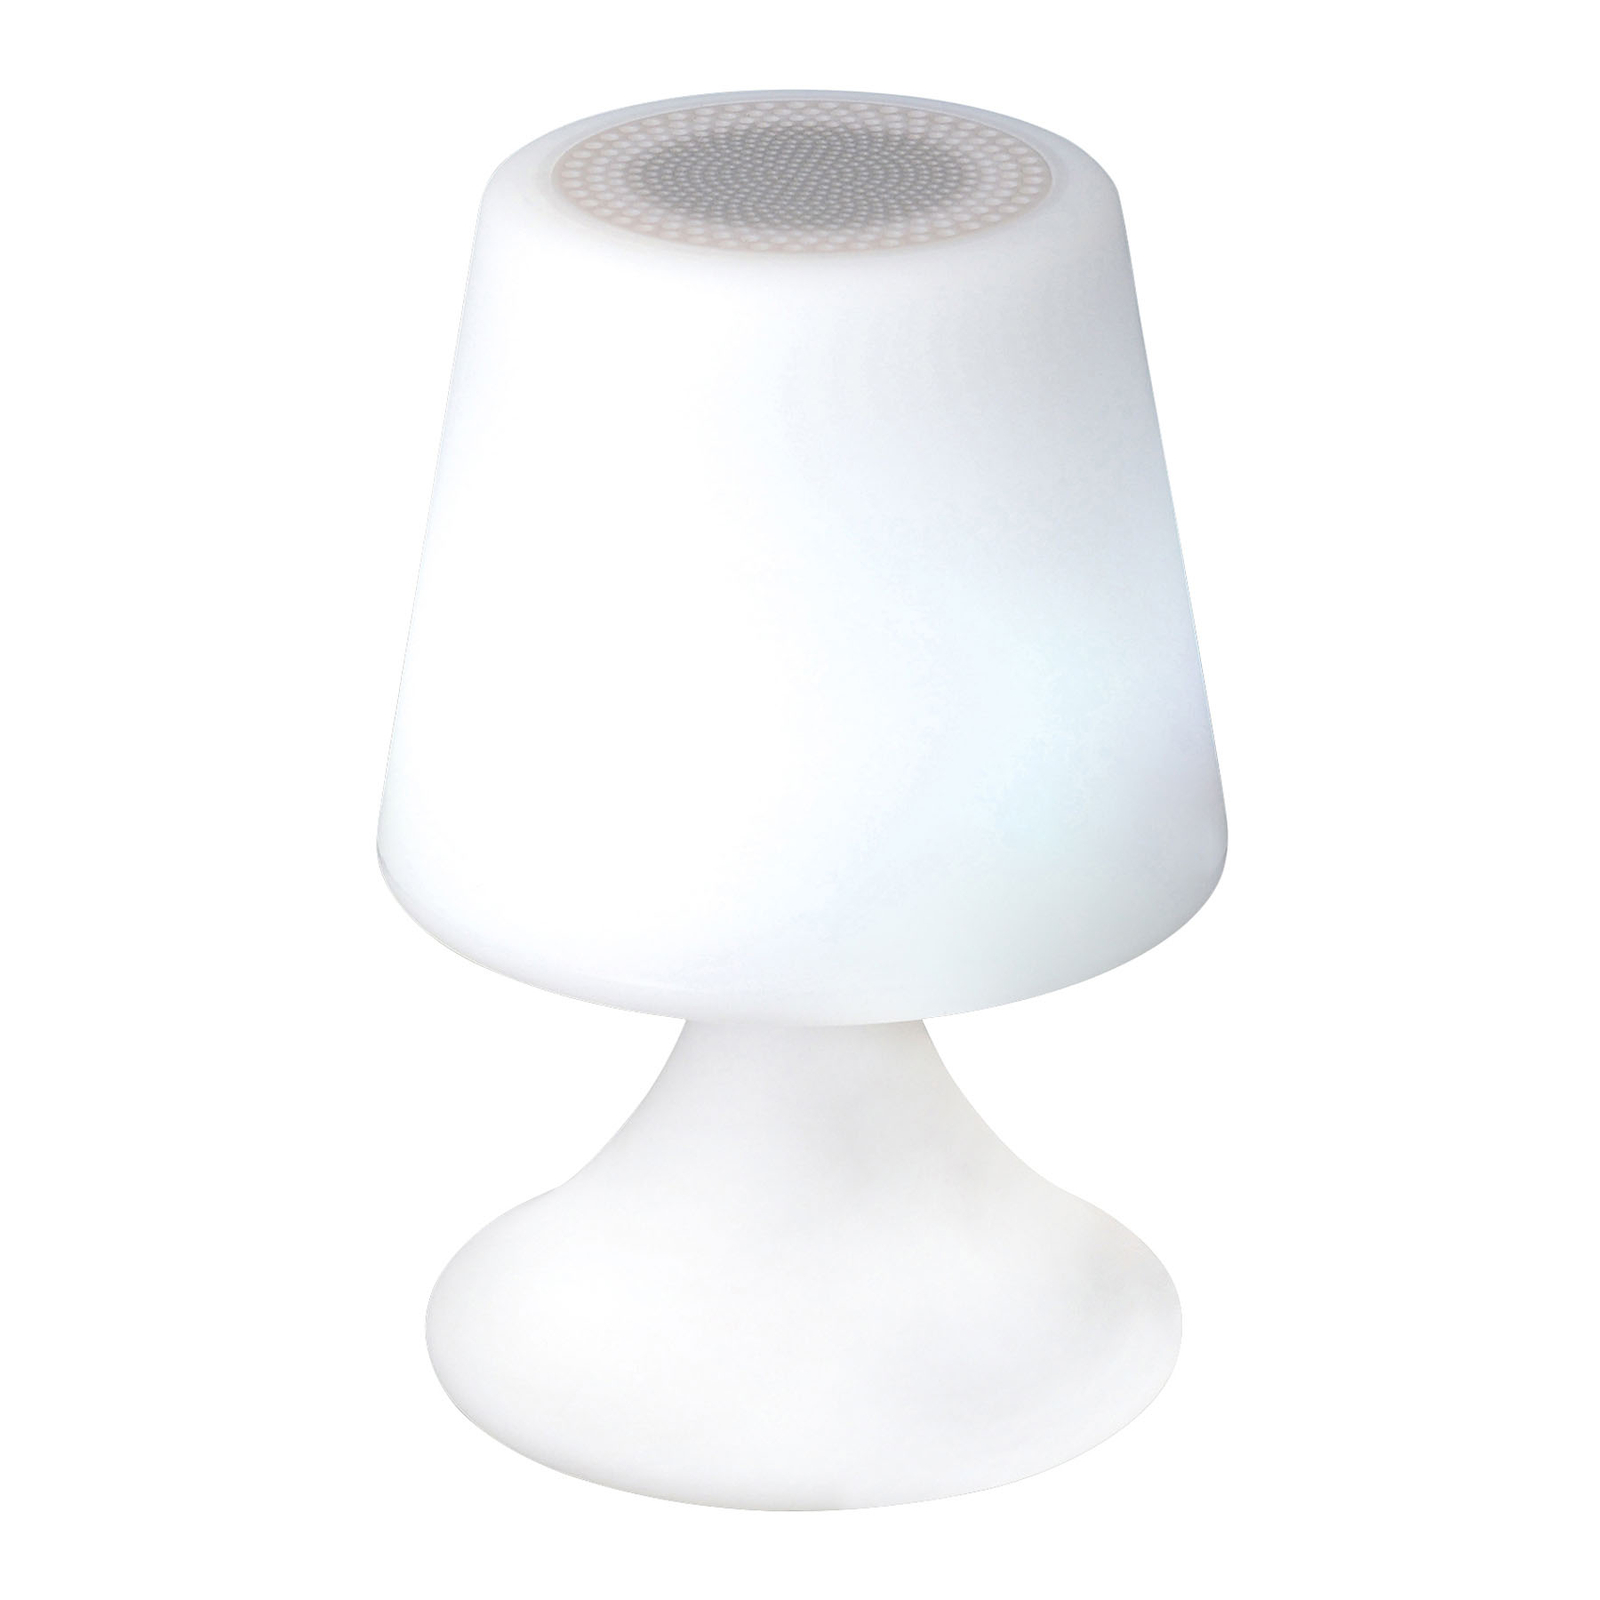 Lámpara decorativa LED Curbi con altavoz Bluetooth